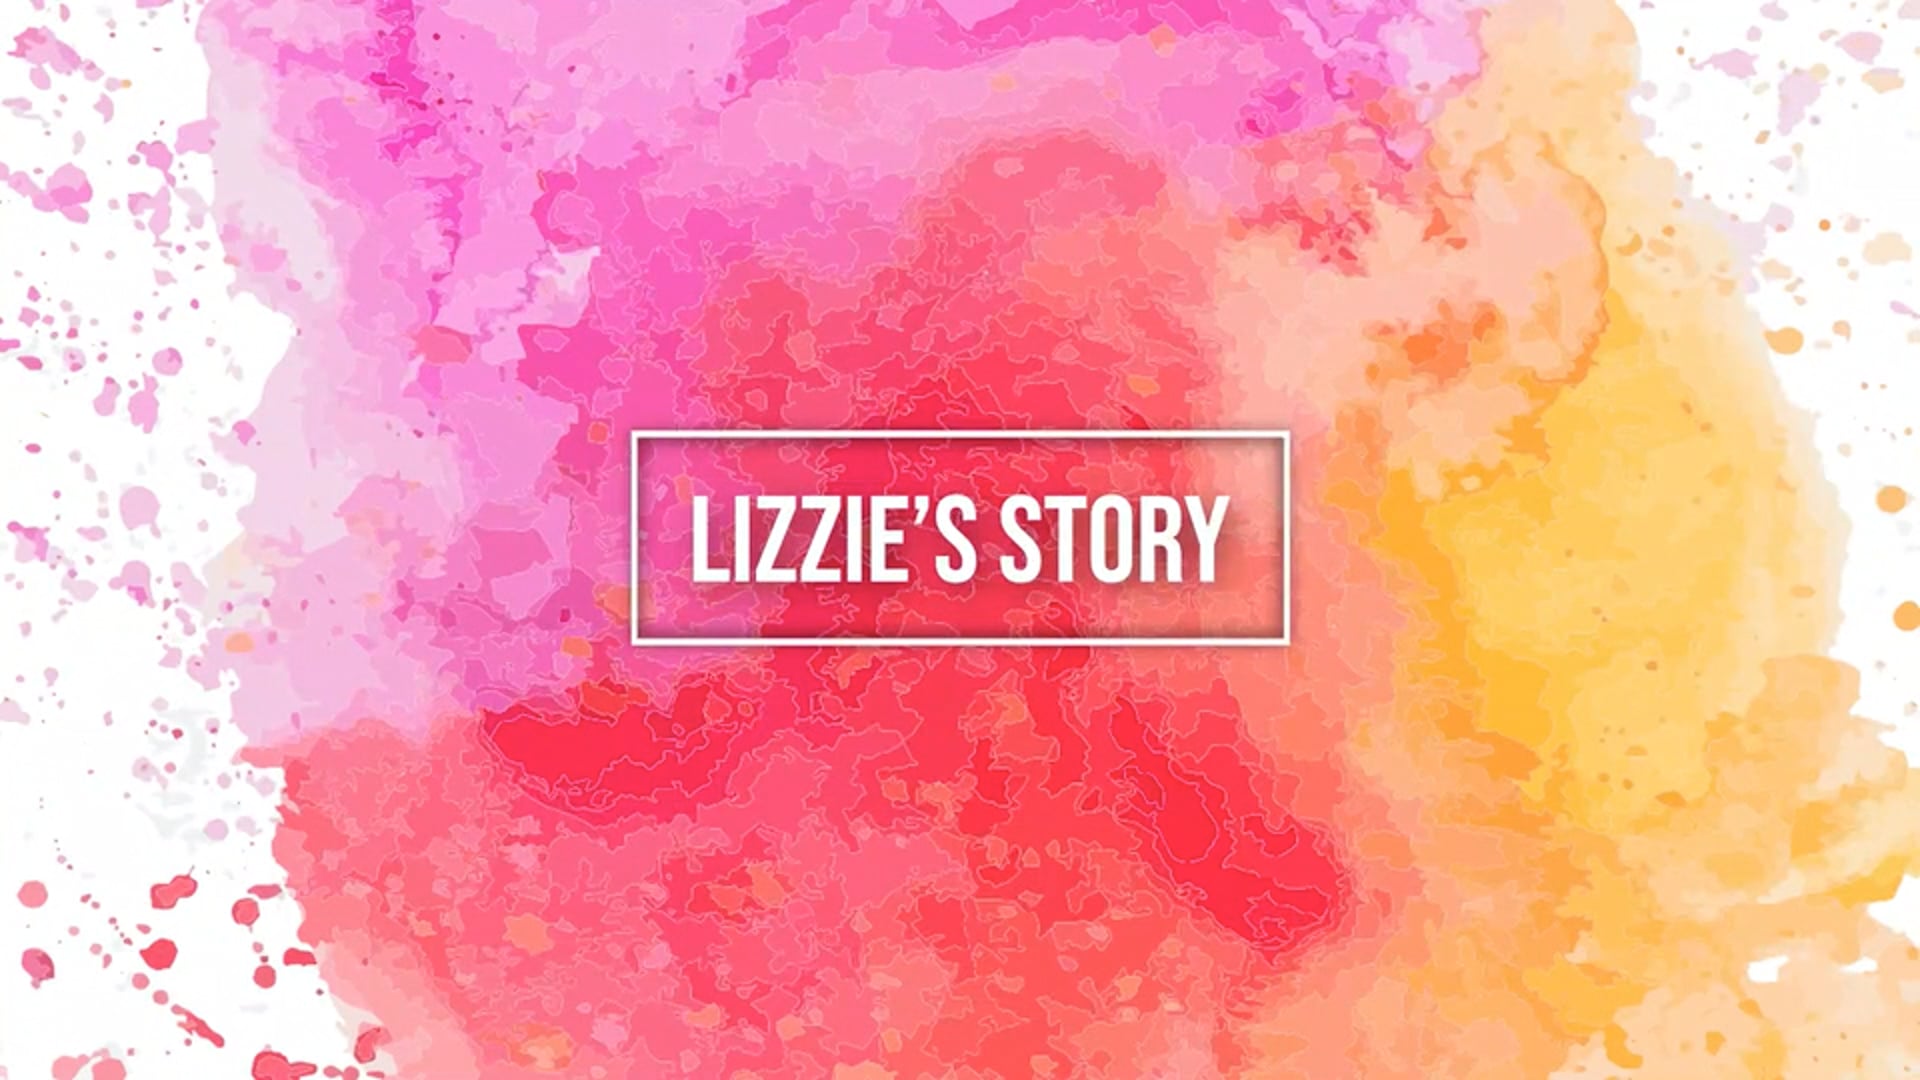 Lizzie's Story